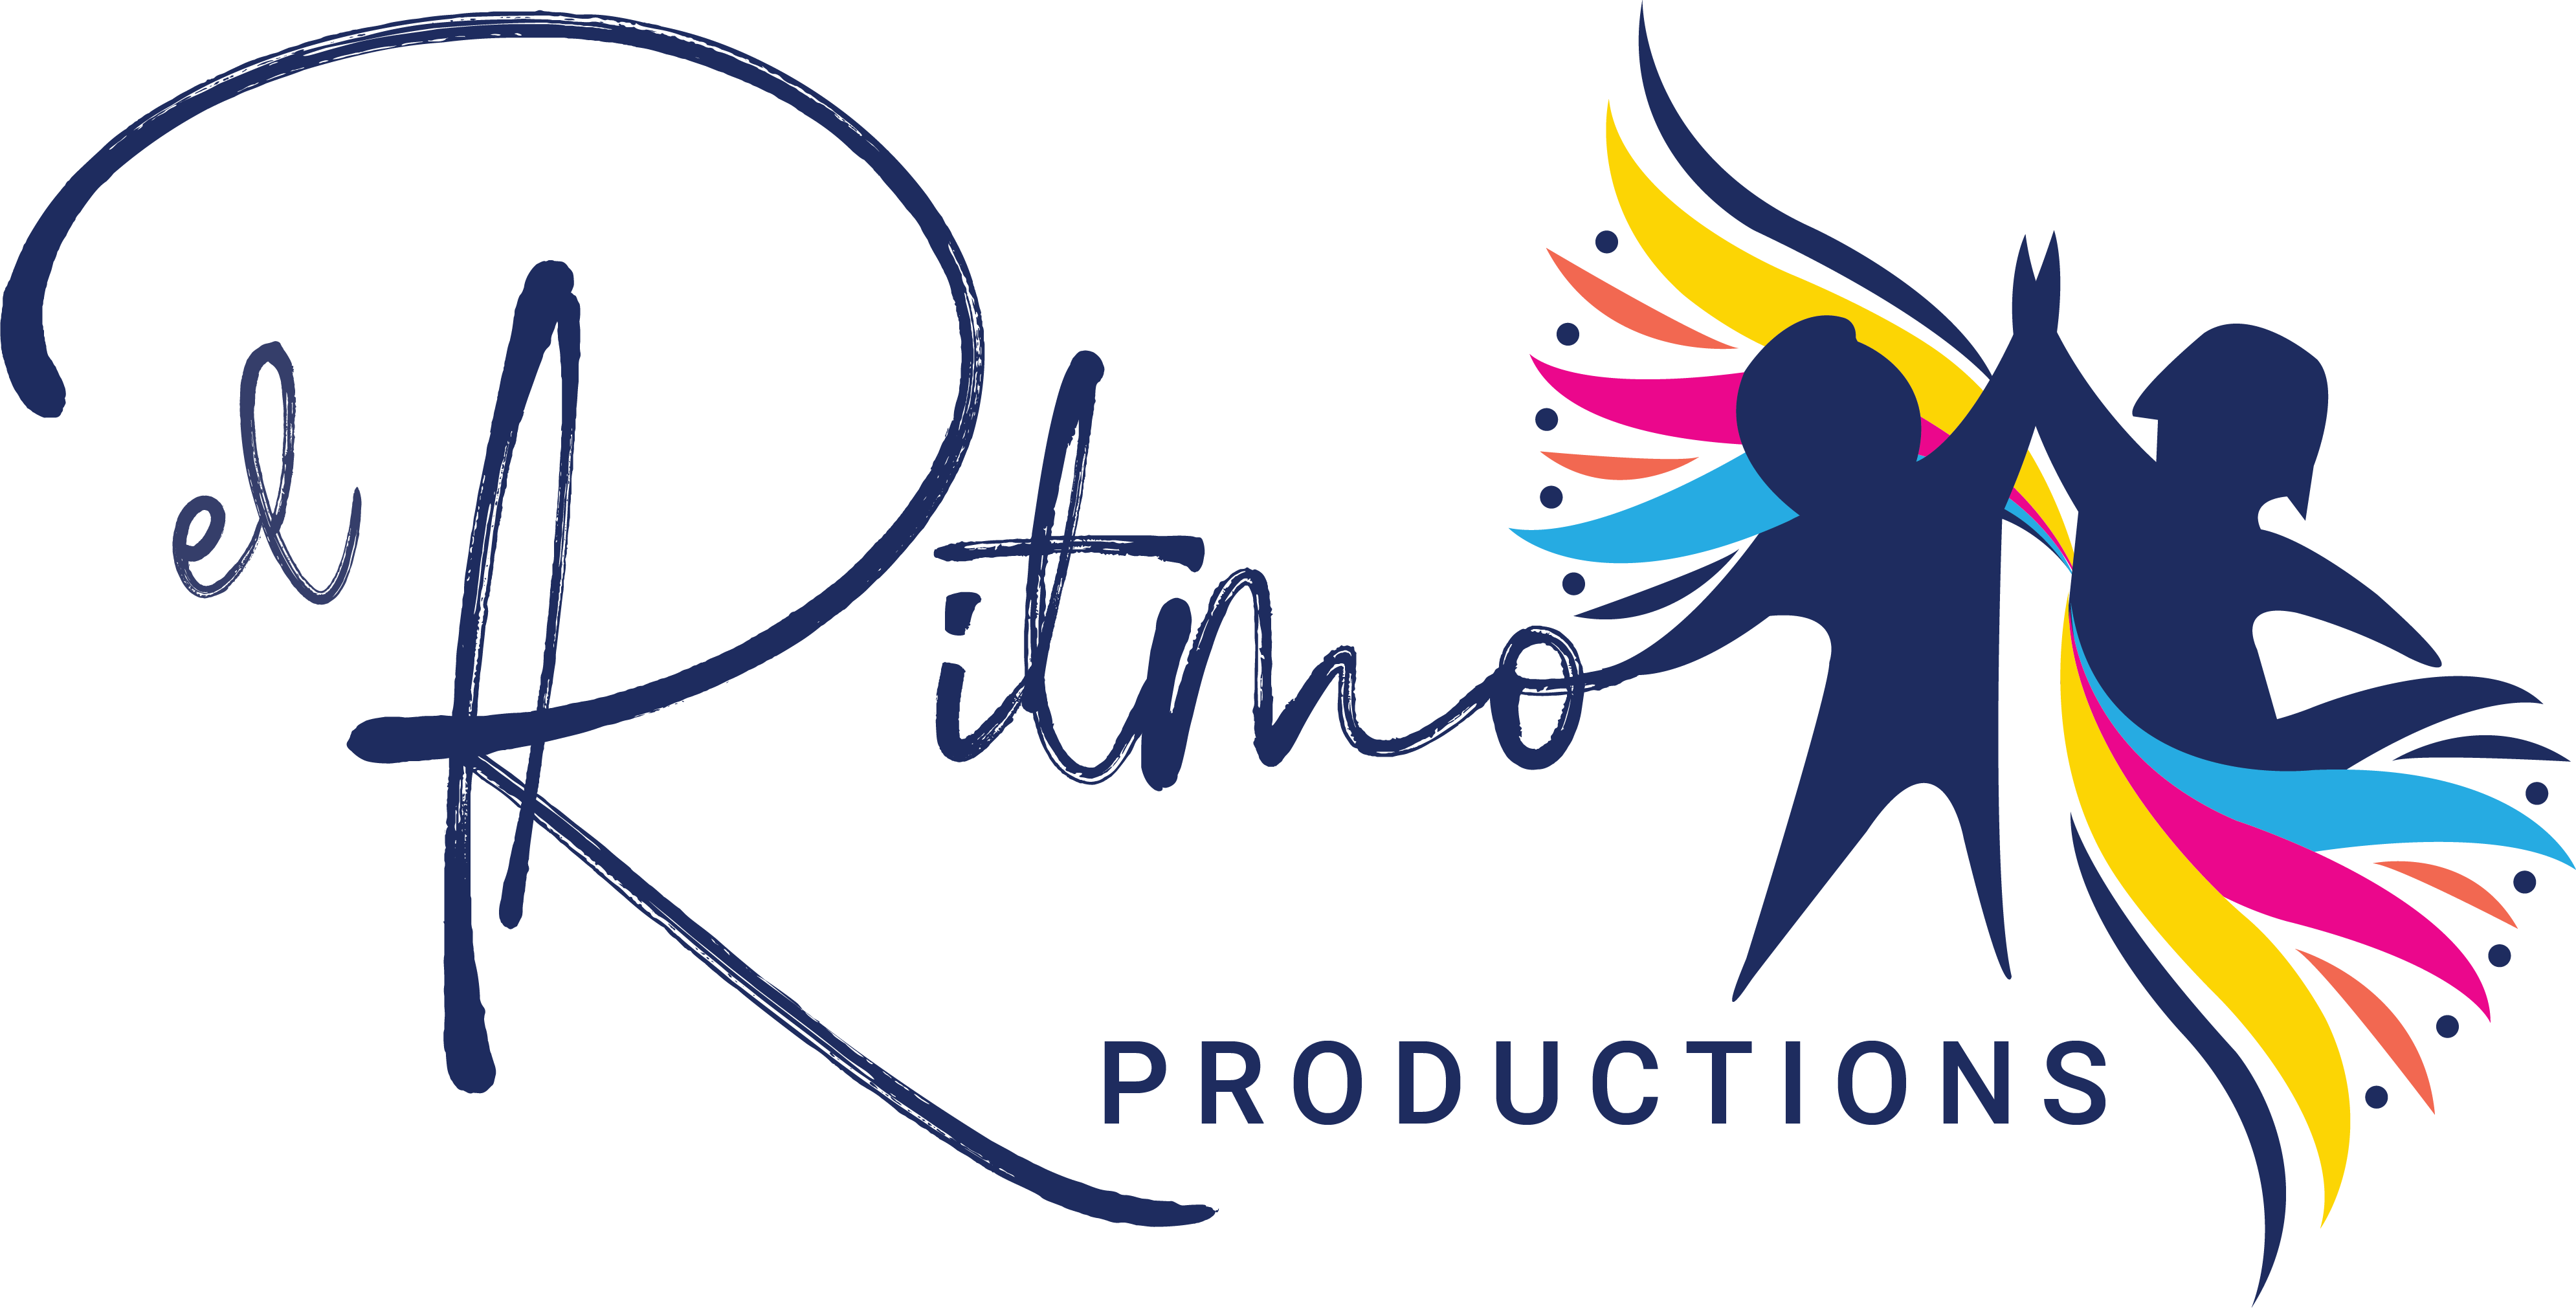 El Ritmo Productions